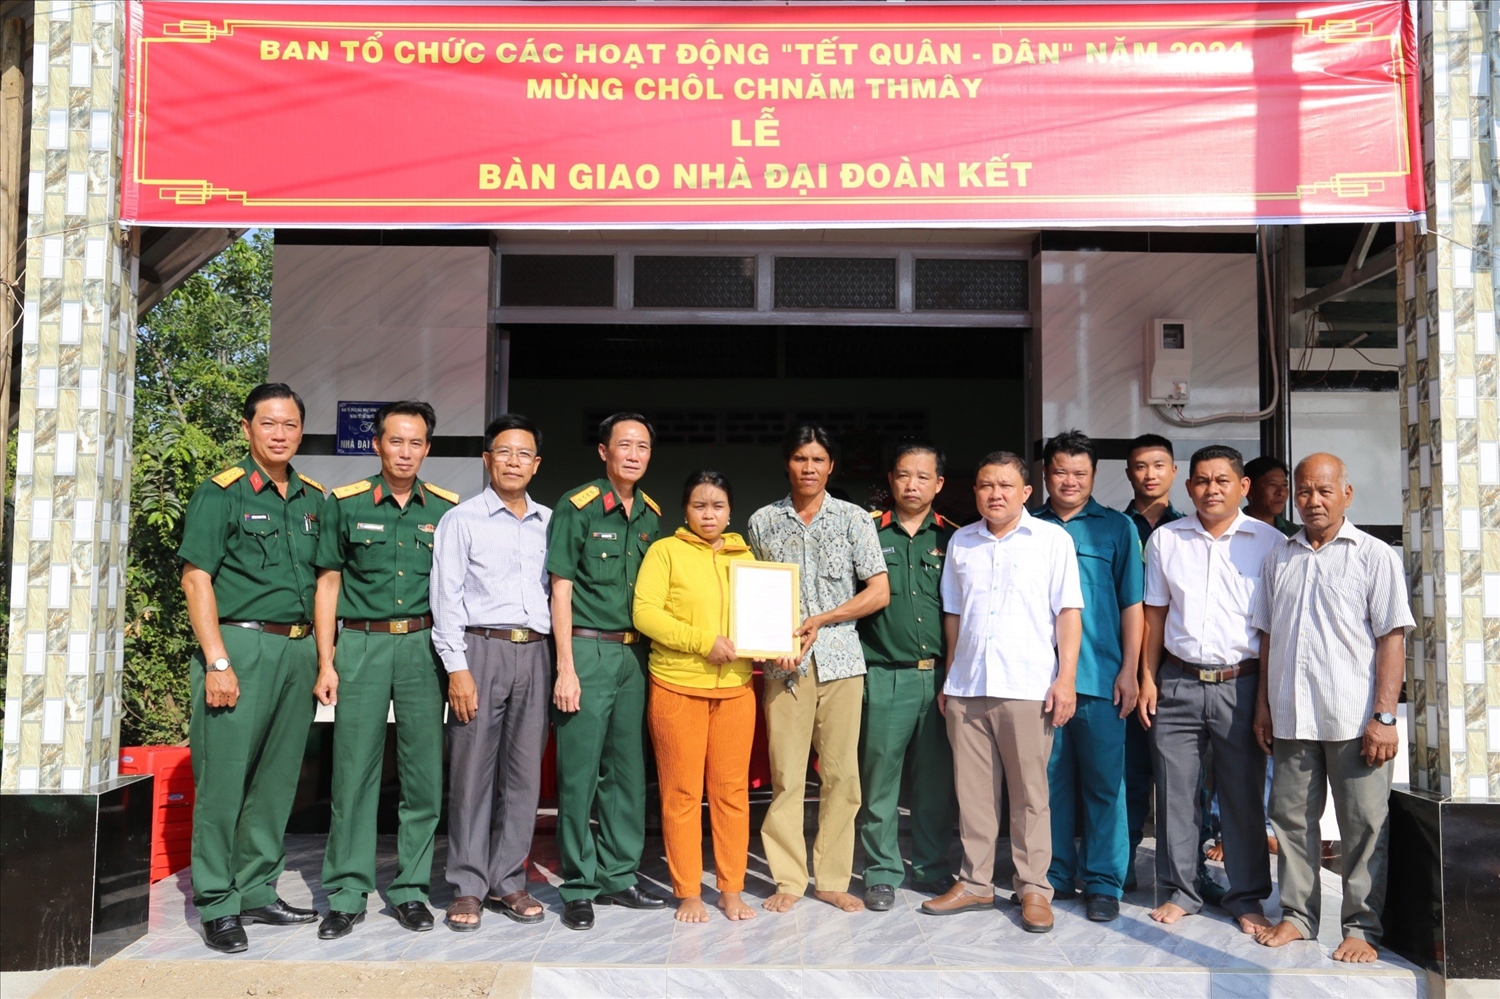 Ban tổ chức ""Tết Quân - Dân" năm 2024 trao nhà Đại đoàn kết cho hộ đồng bào dân tộc Khmer tại xã An Minh Bắc, huyện U Minh Thượng, tỉnh Kiên Giang